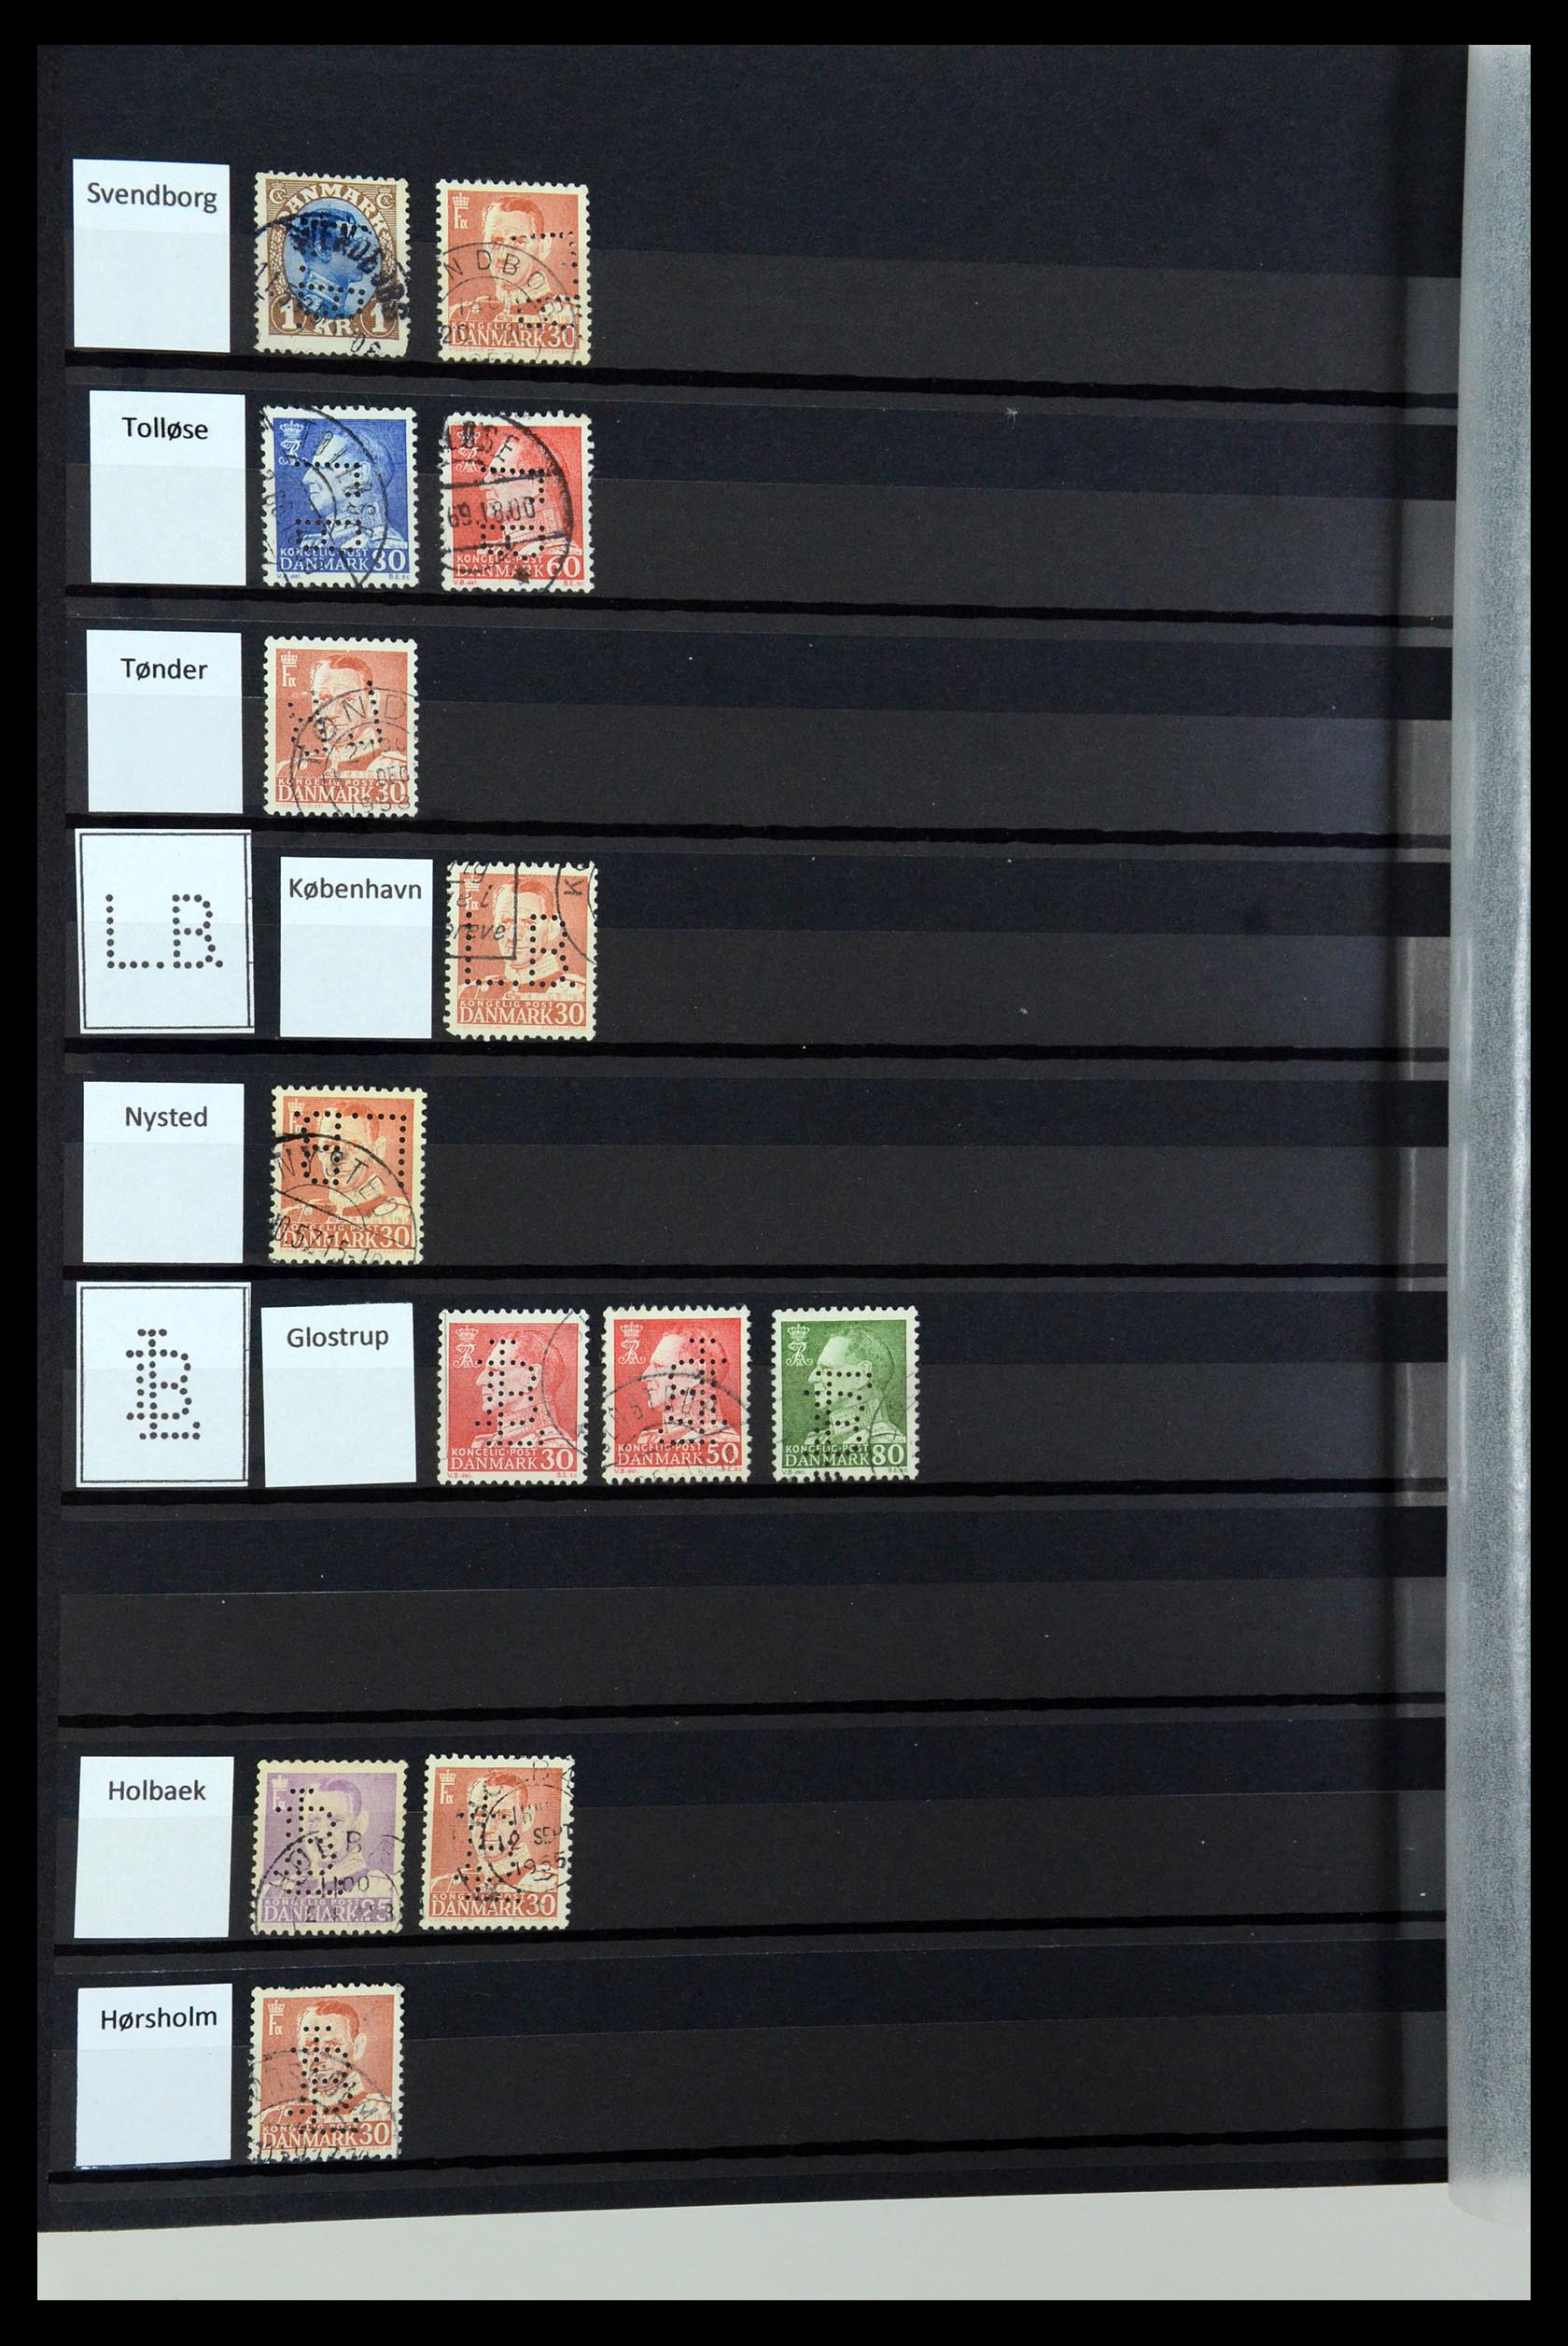 36396 087 - Postzegelverzameling 36396 Denemarken perfins.